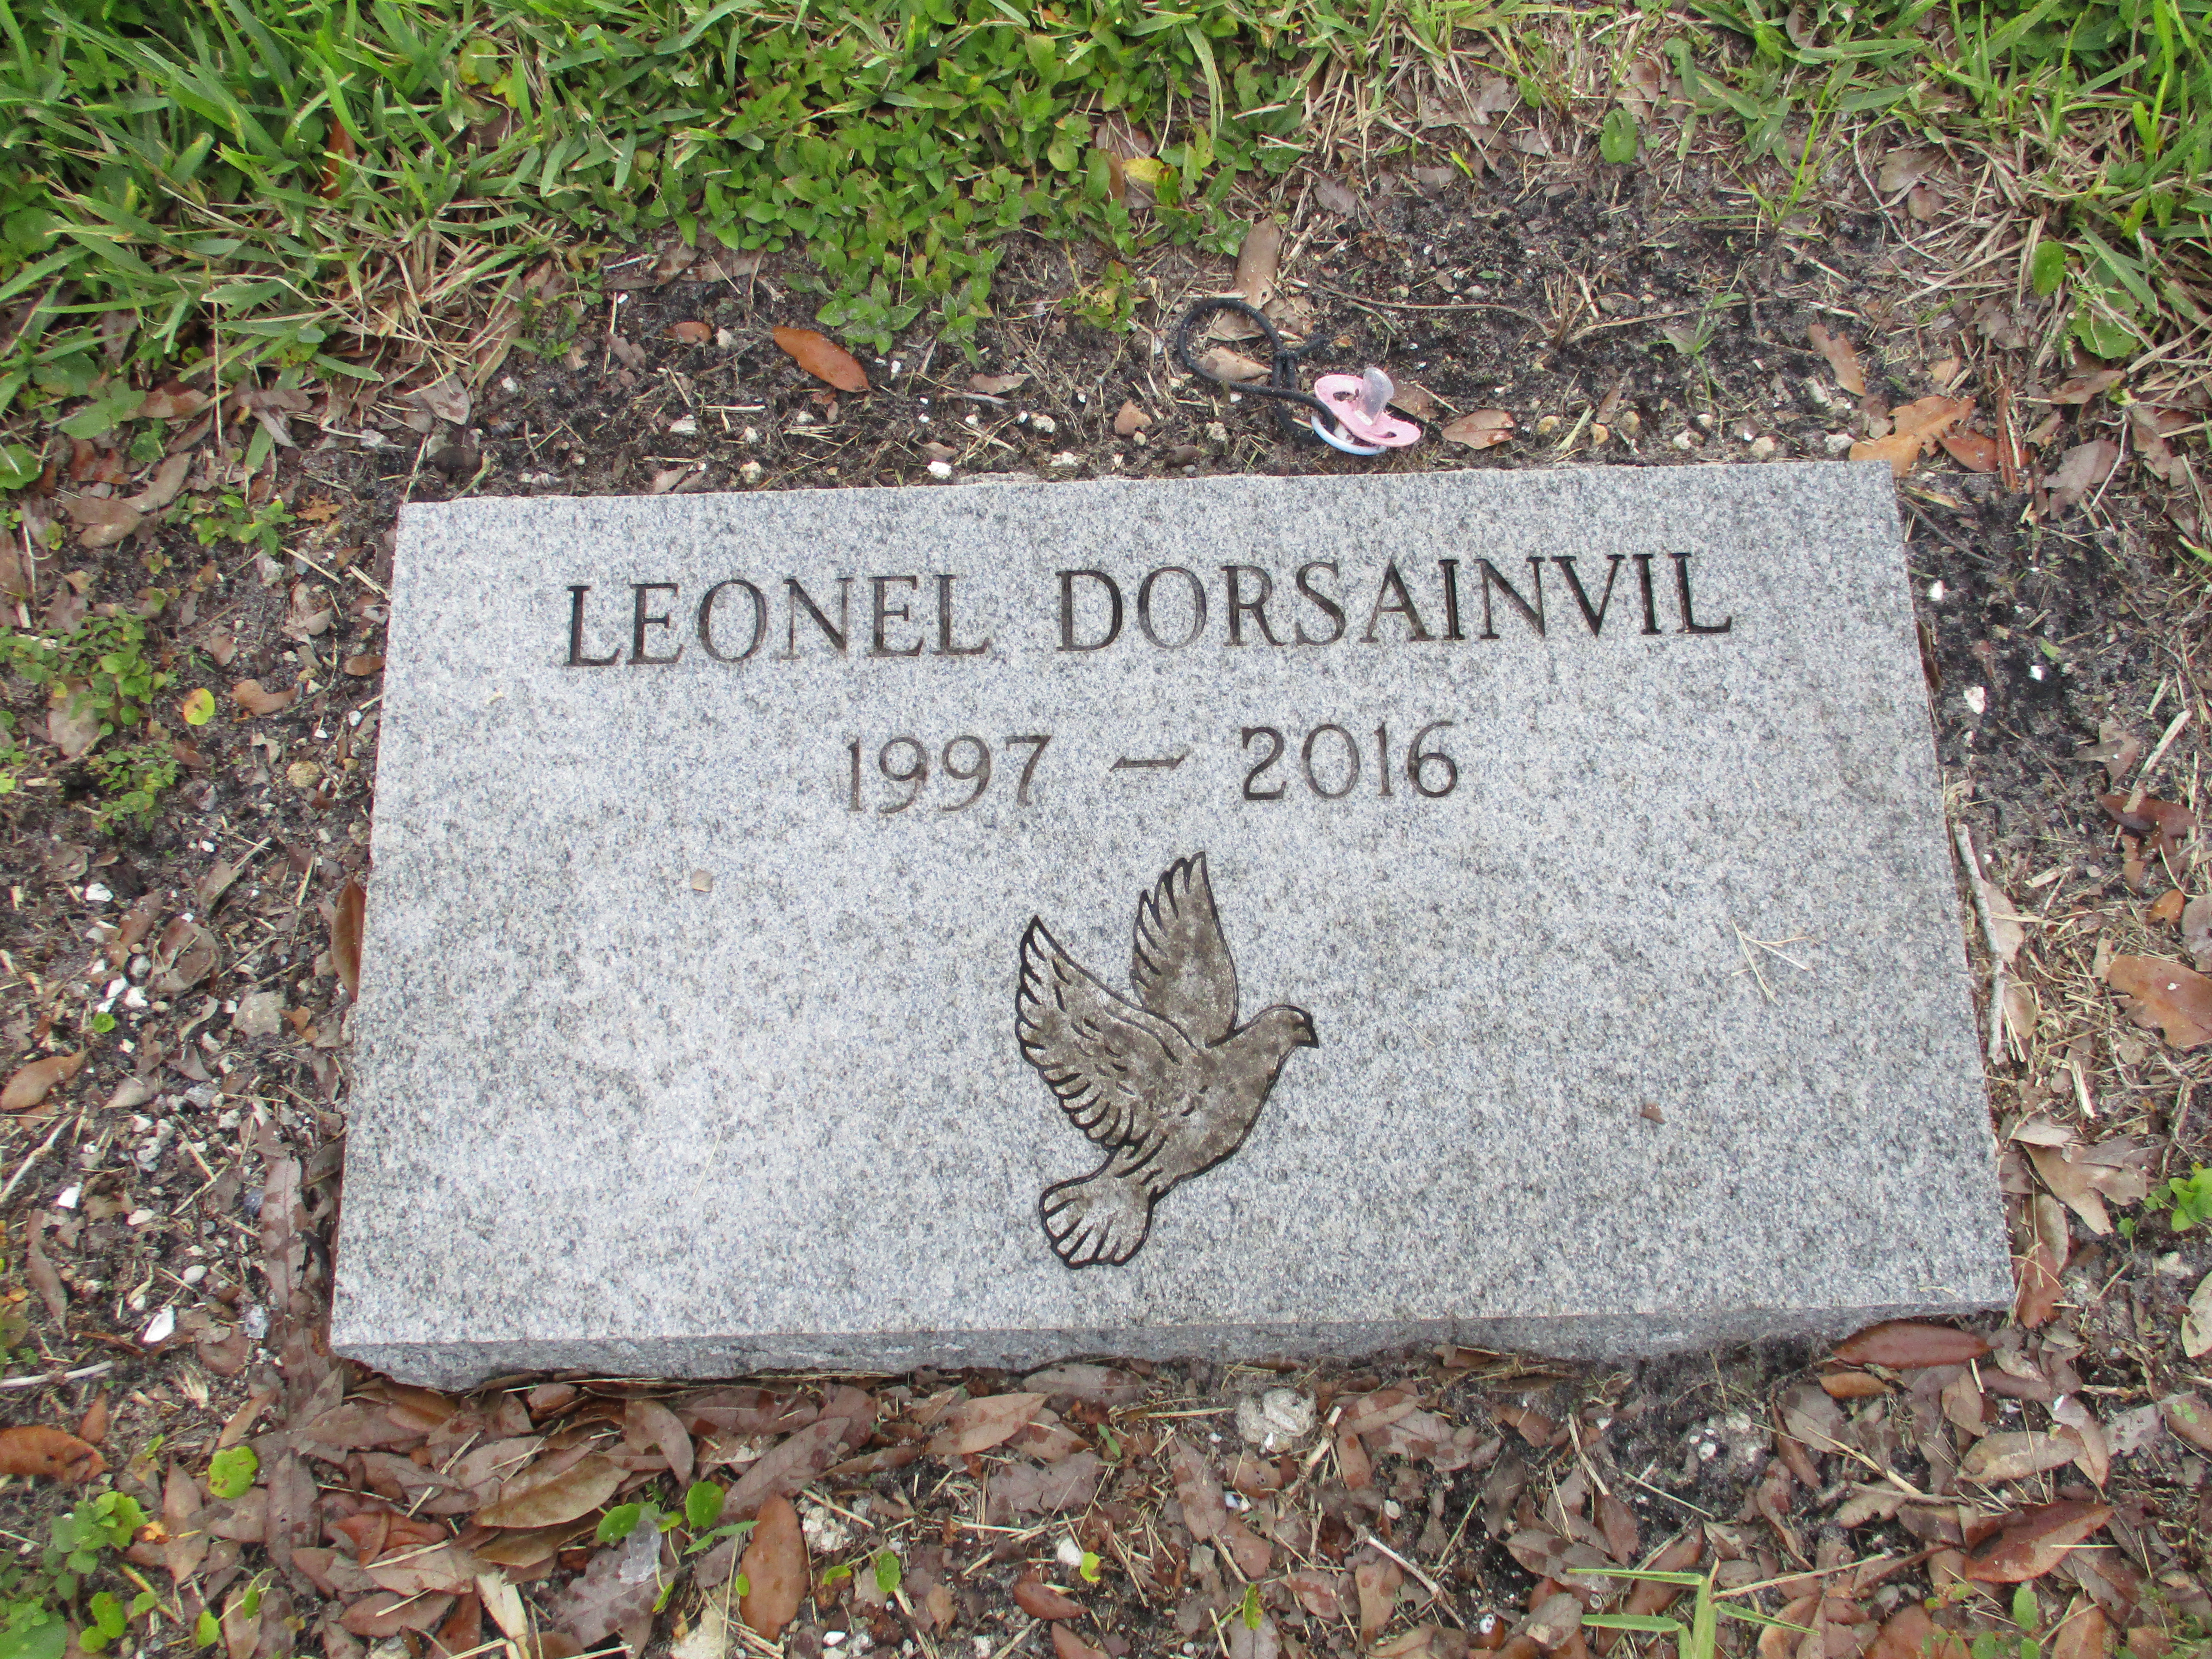 Leonel Dorsainvil